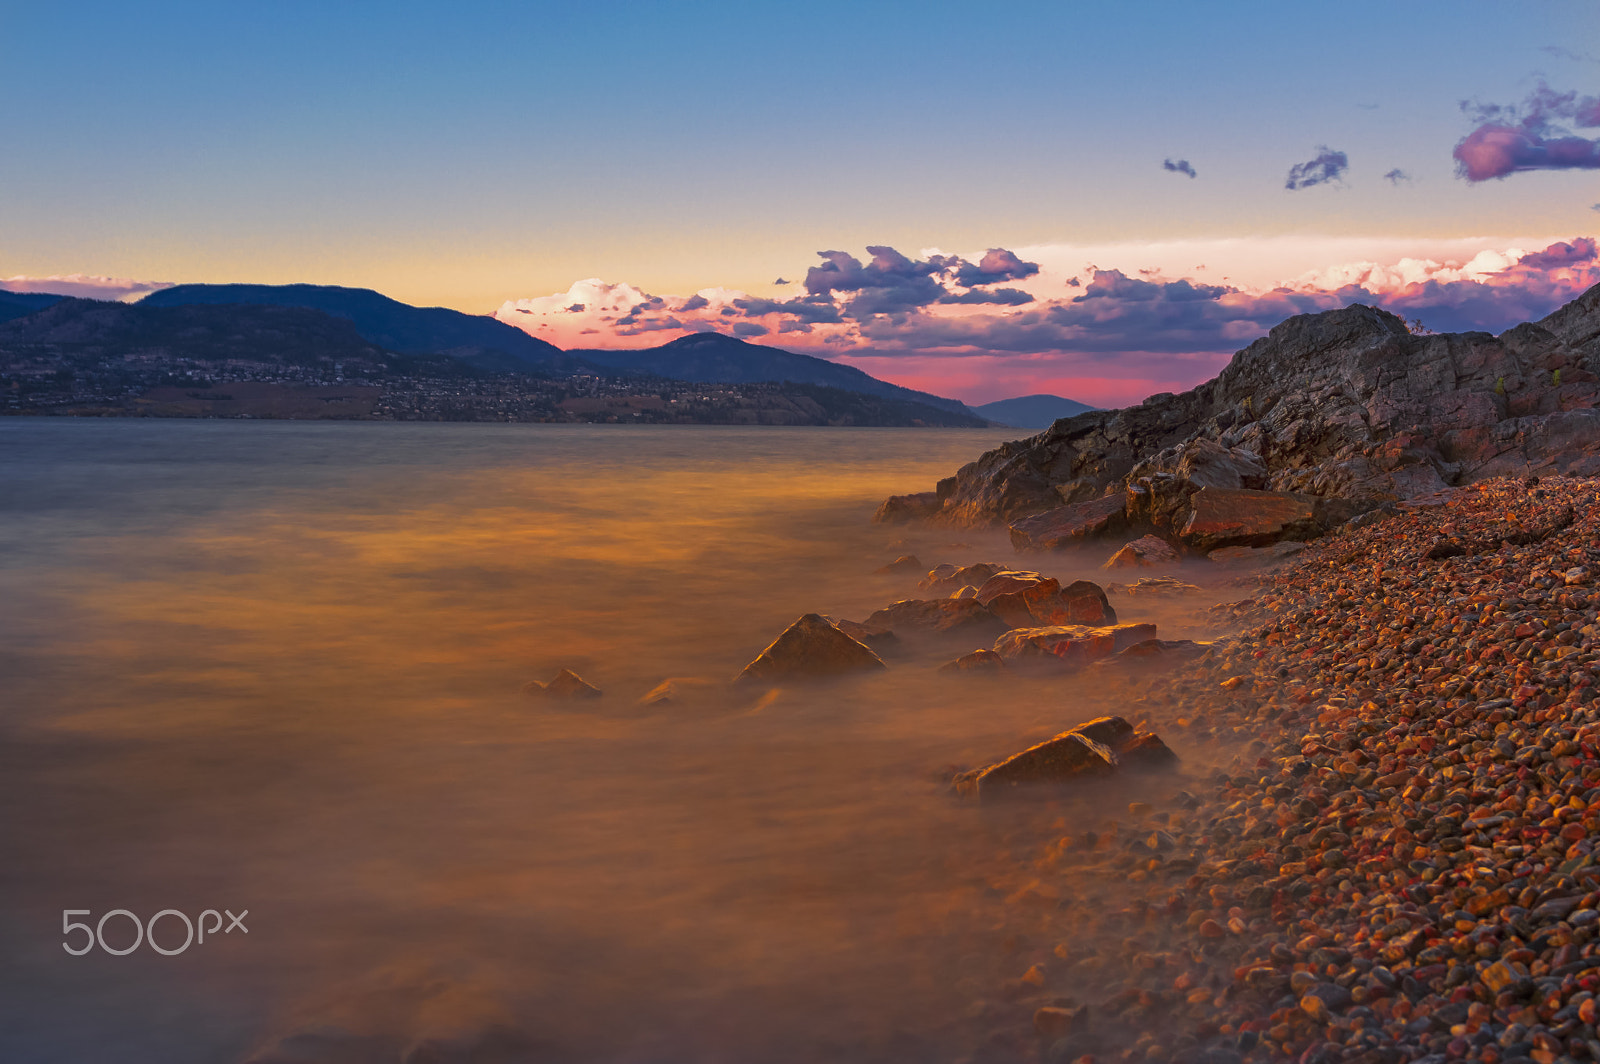 Nikon D3200 + Sigma 17-70mm F2.8-4 DC Macro OS HSM | C sample photo. Okanagan lake sunset photography